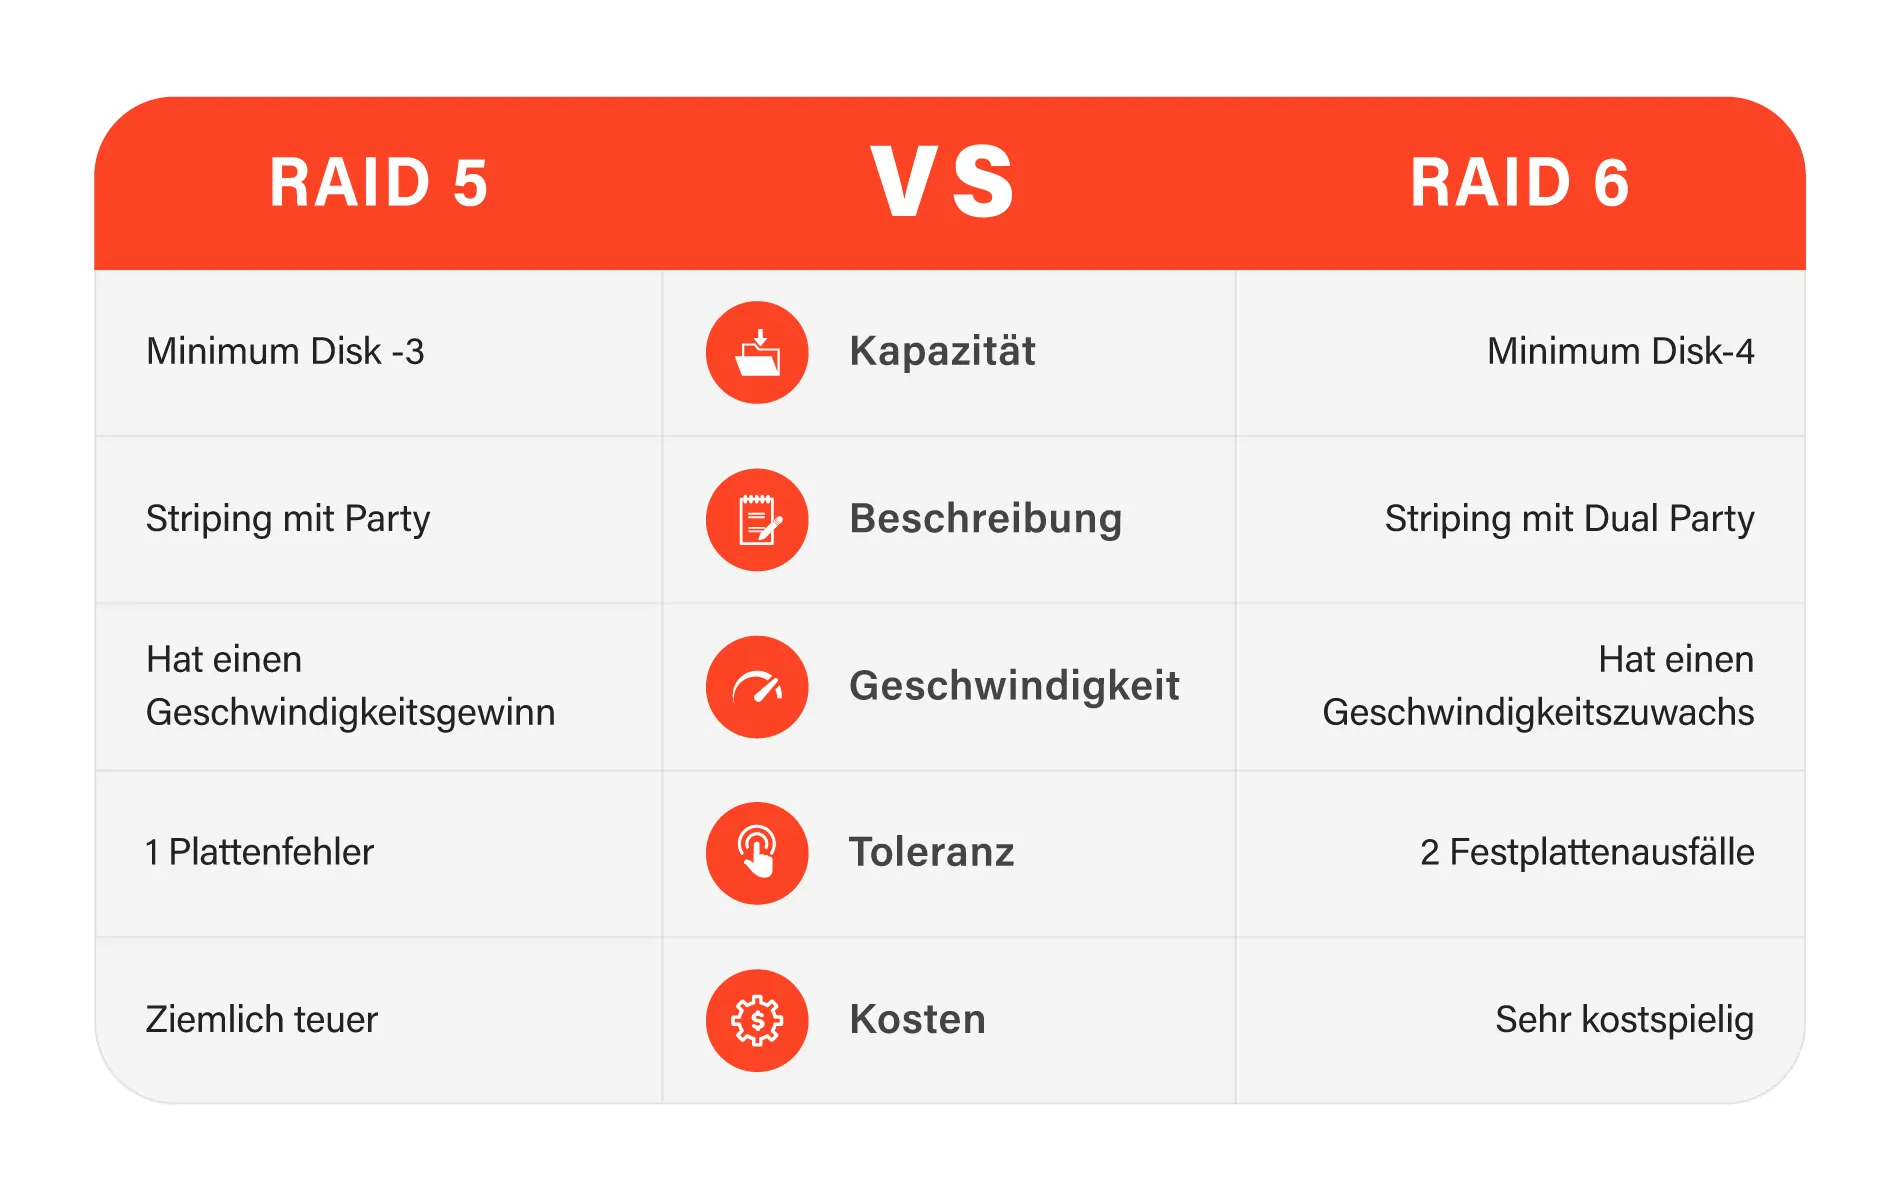 Vergleich zwischen RAID 5 und RAID 6, um die Unterschiede und Vorzüge der RAID-Technologien zu verstehen.